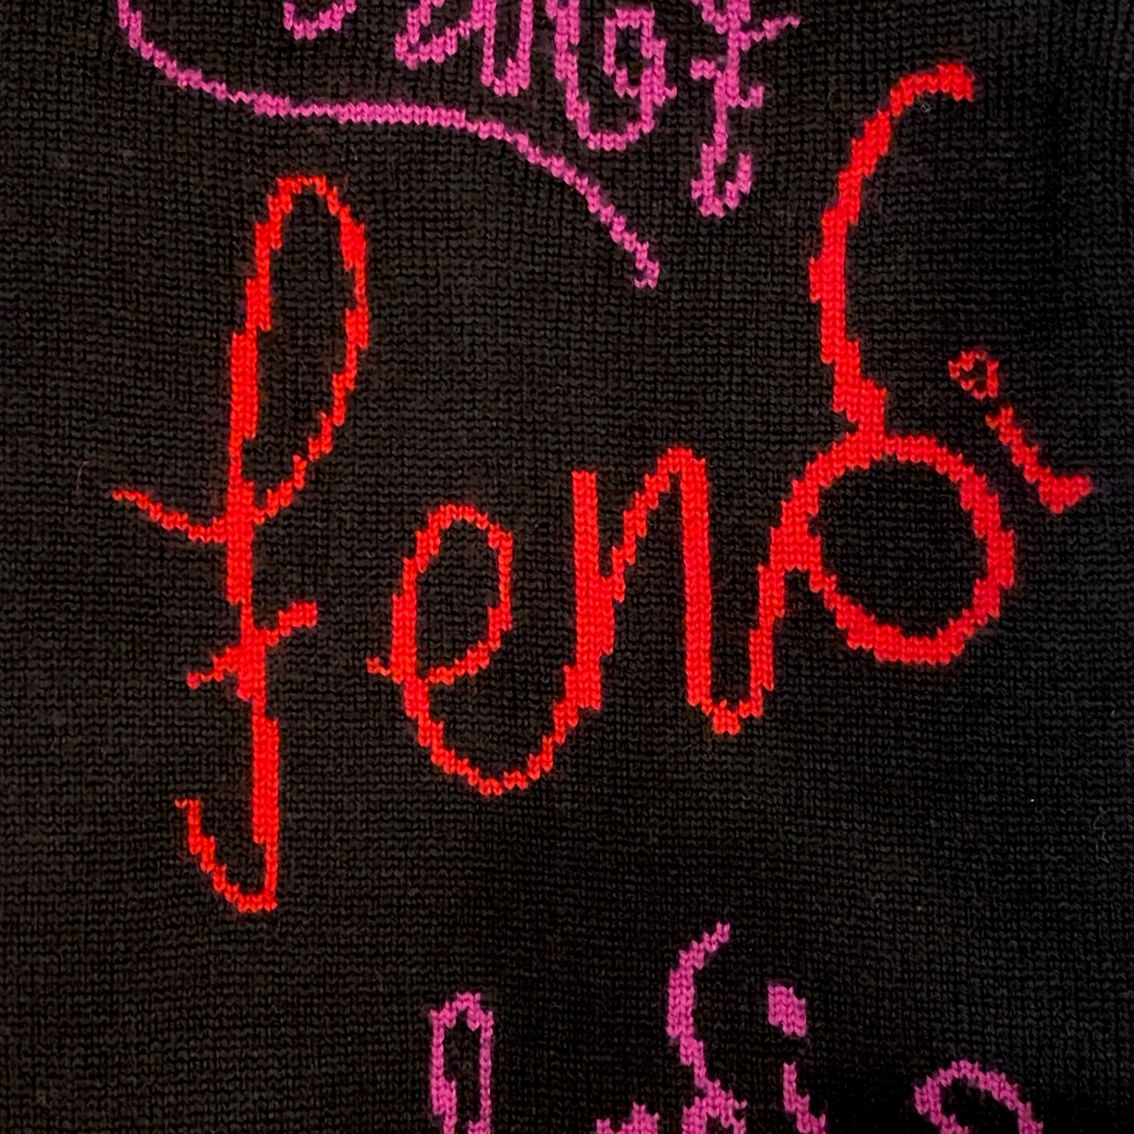 Fendi x Noel Felding Motif Nero Woven Wool Scarf (New) - Image 3 of 3